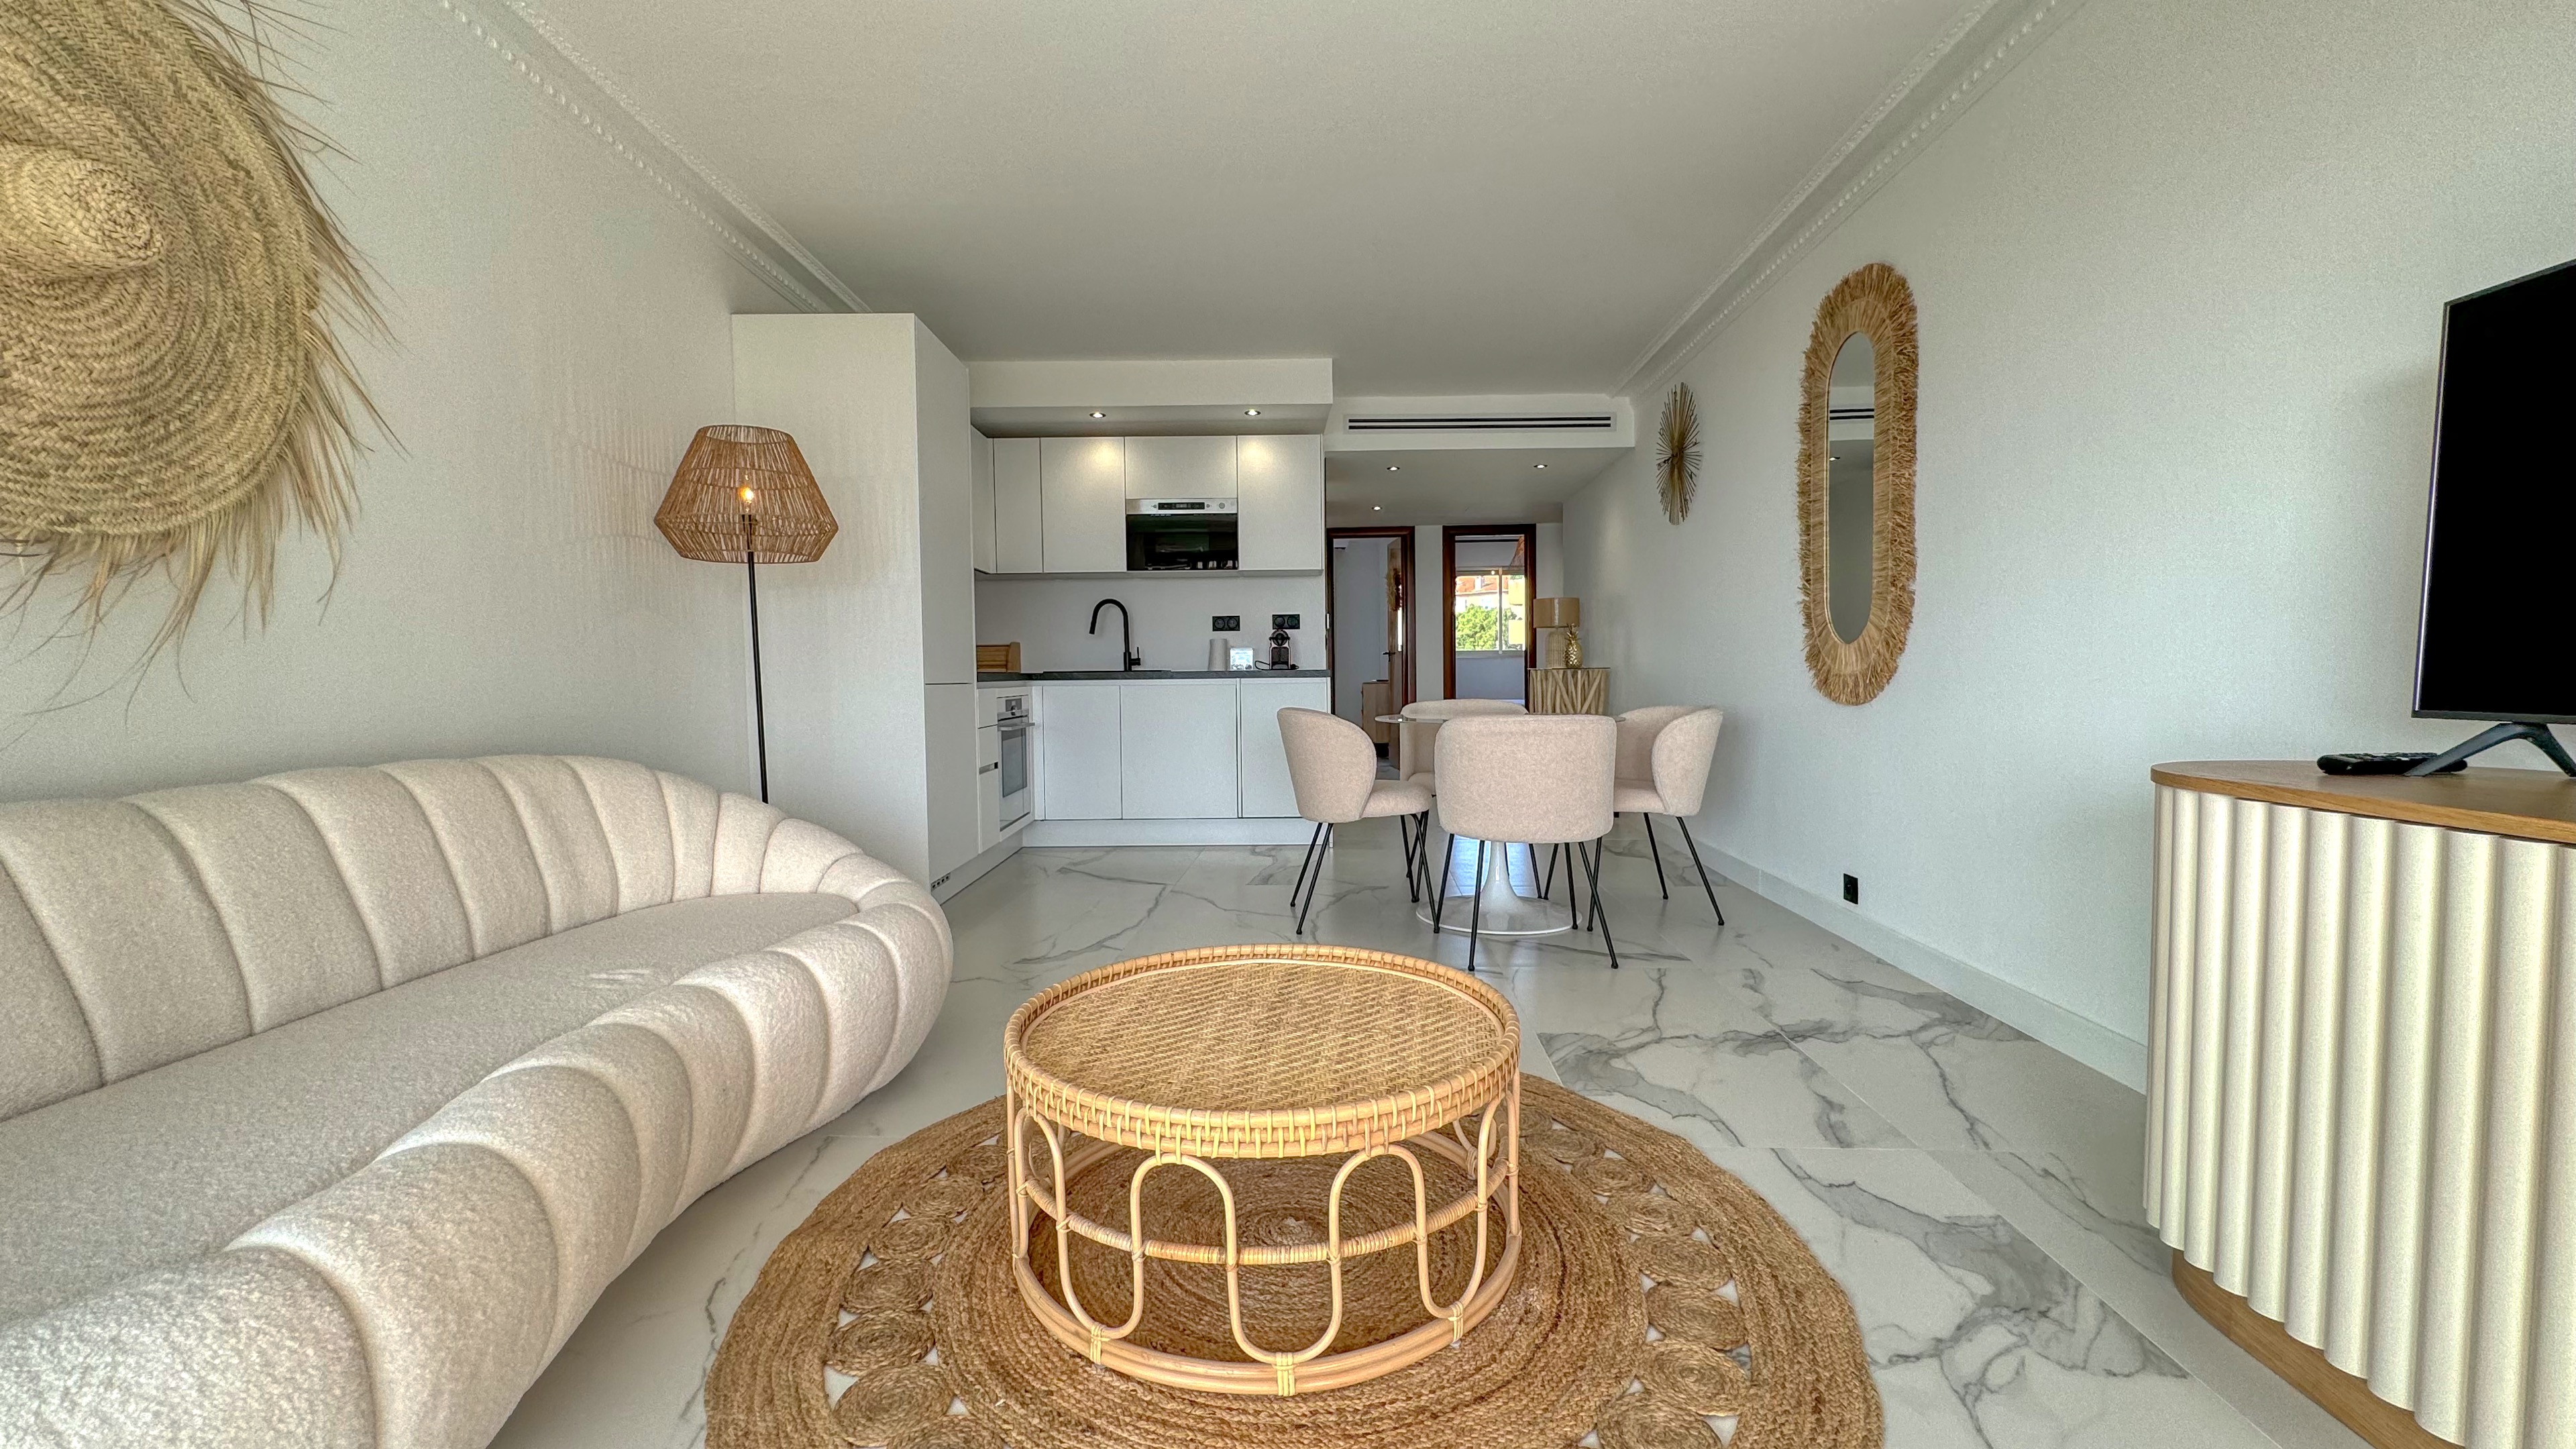 🌴 La Palmeraie de Roquebrune Cap Martin - Appartement Rénové avec Vue Imprenable 🌴 7